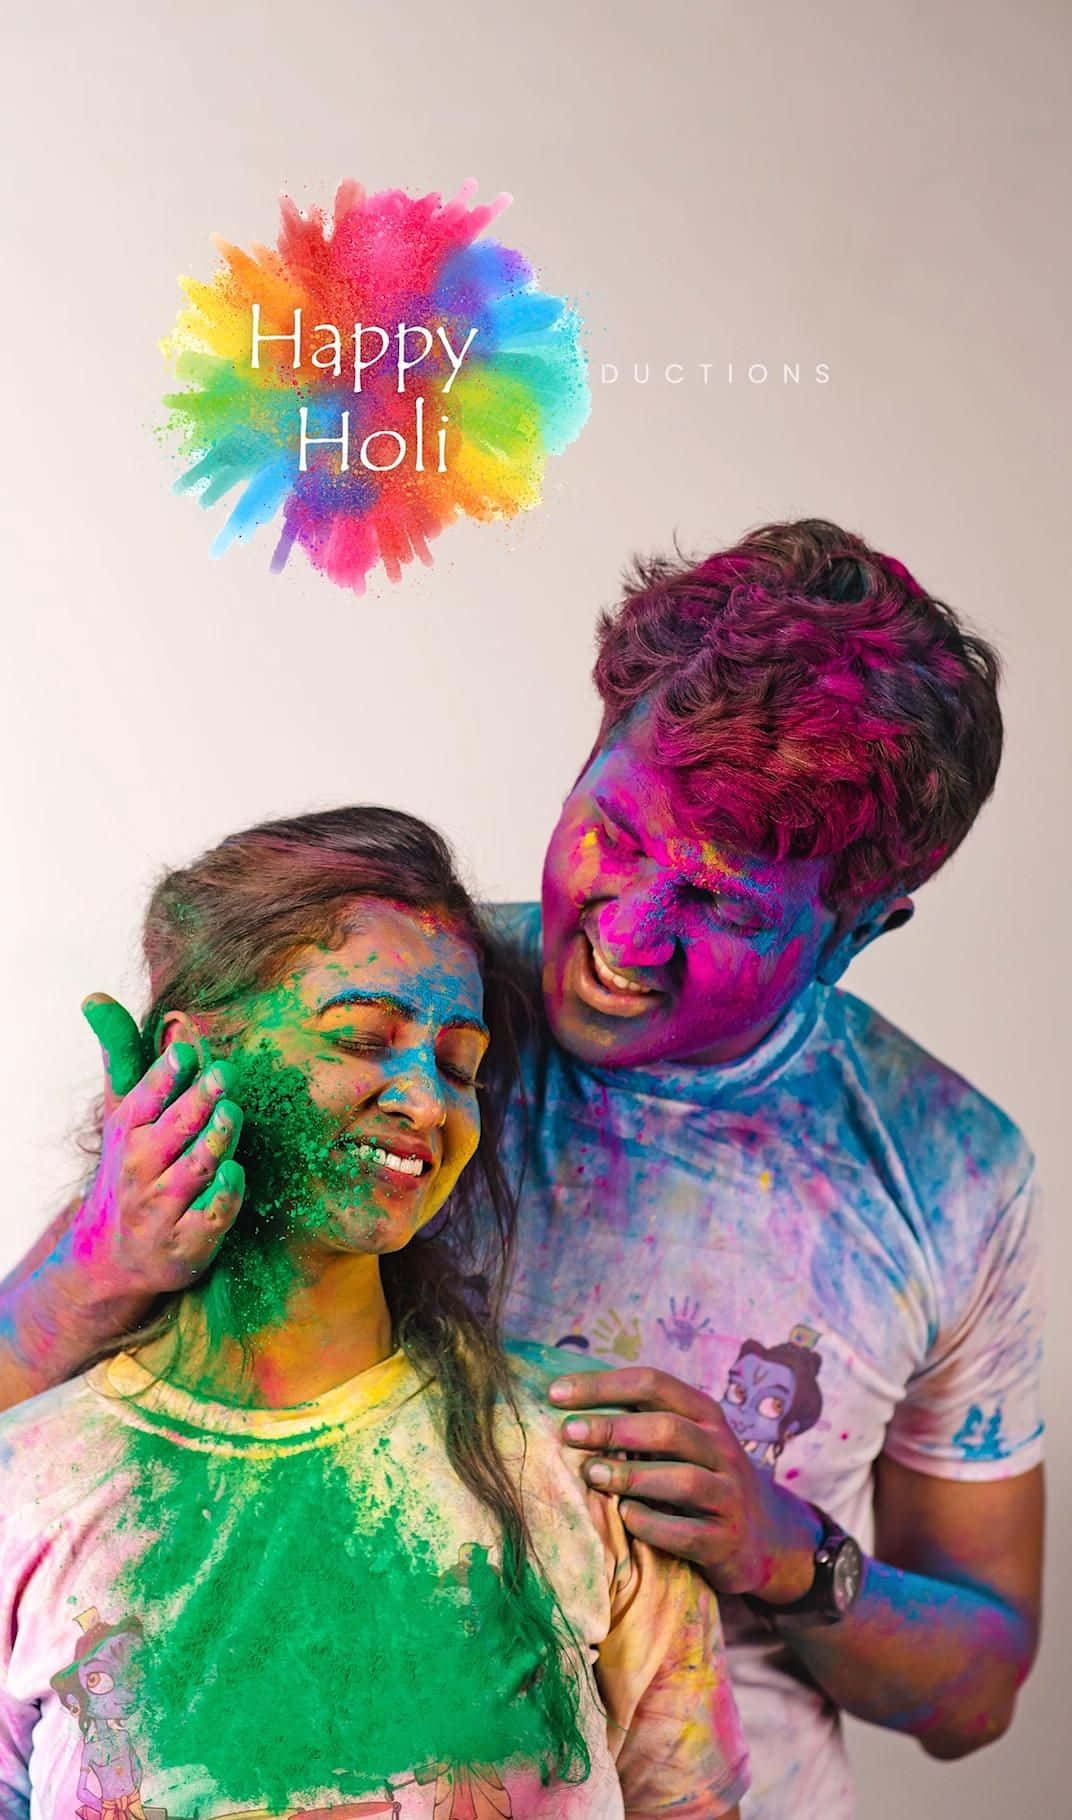 Colorful celebration of Holi